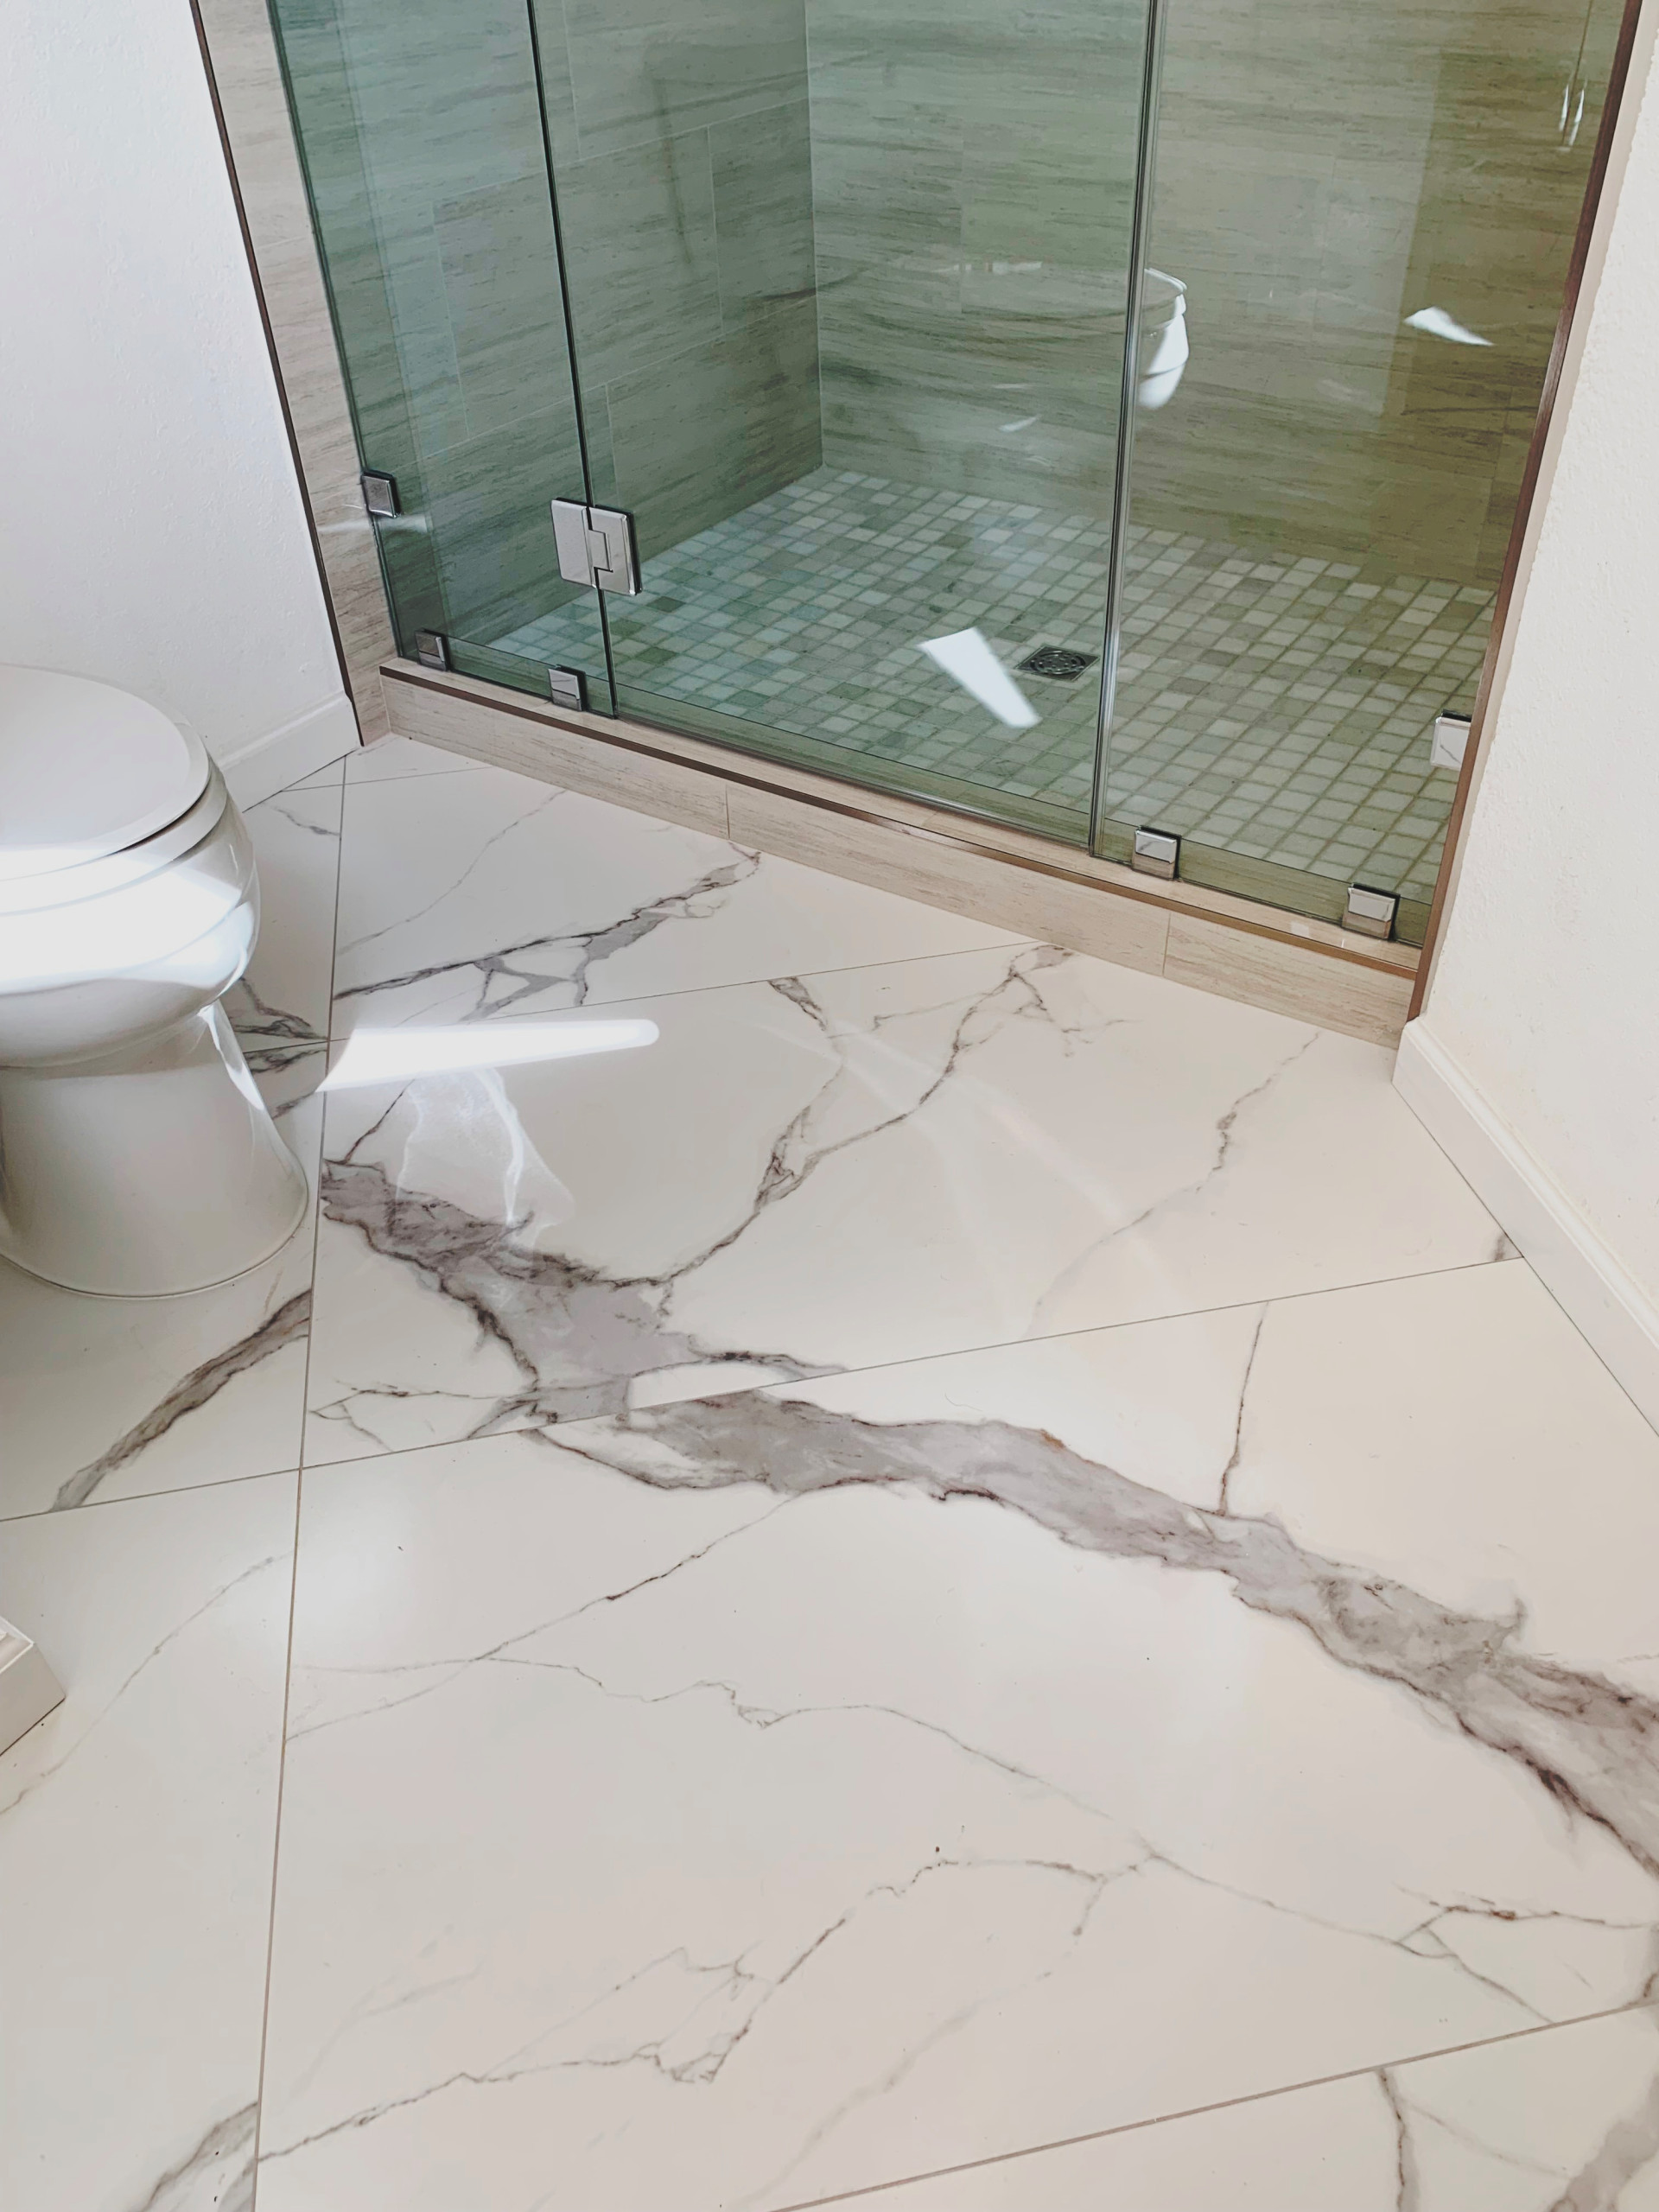 Large format ceramic tile floor & shower walls.